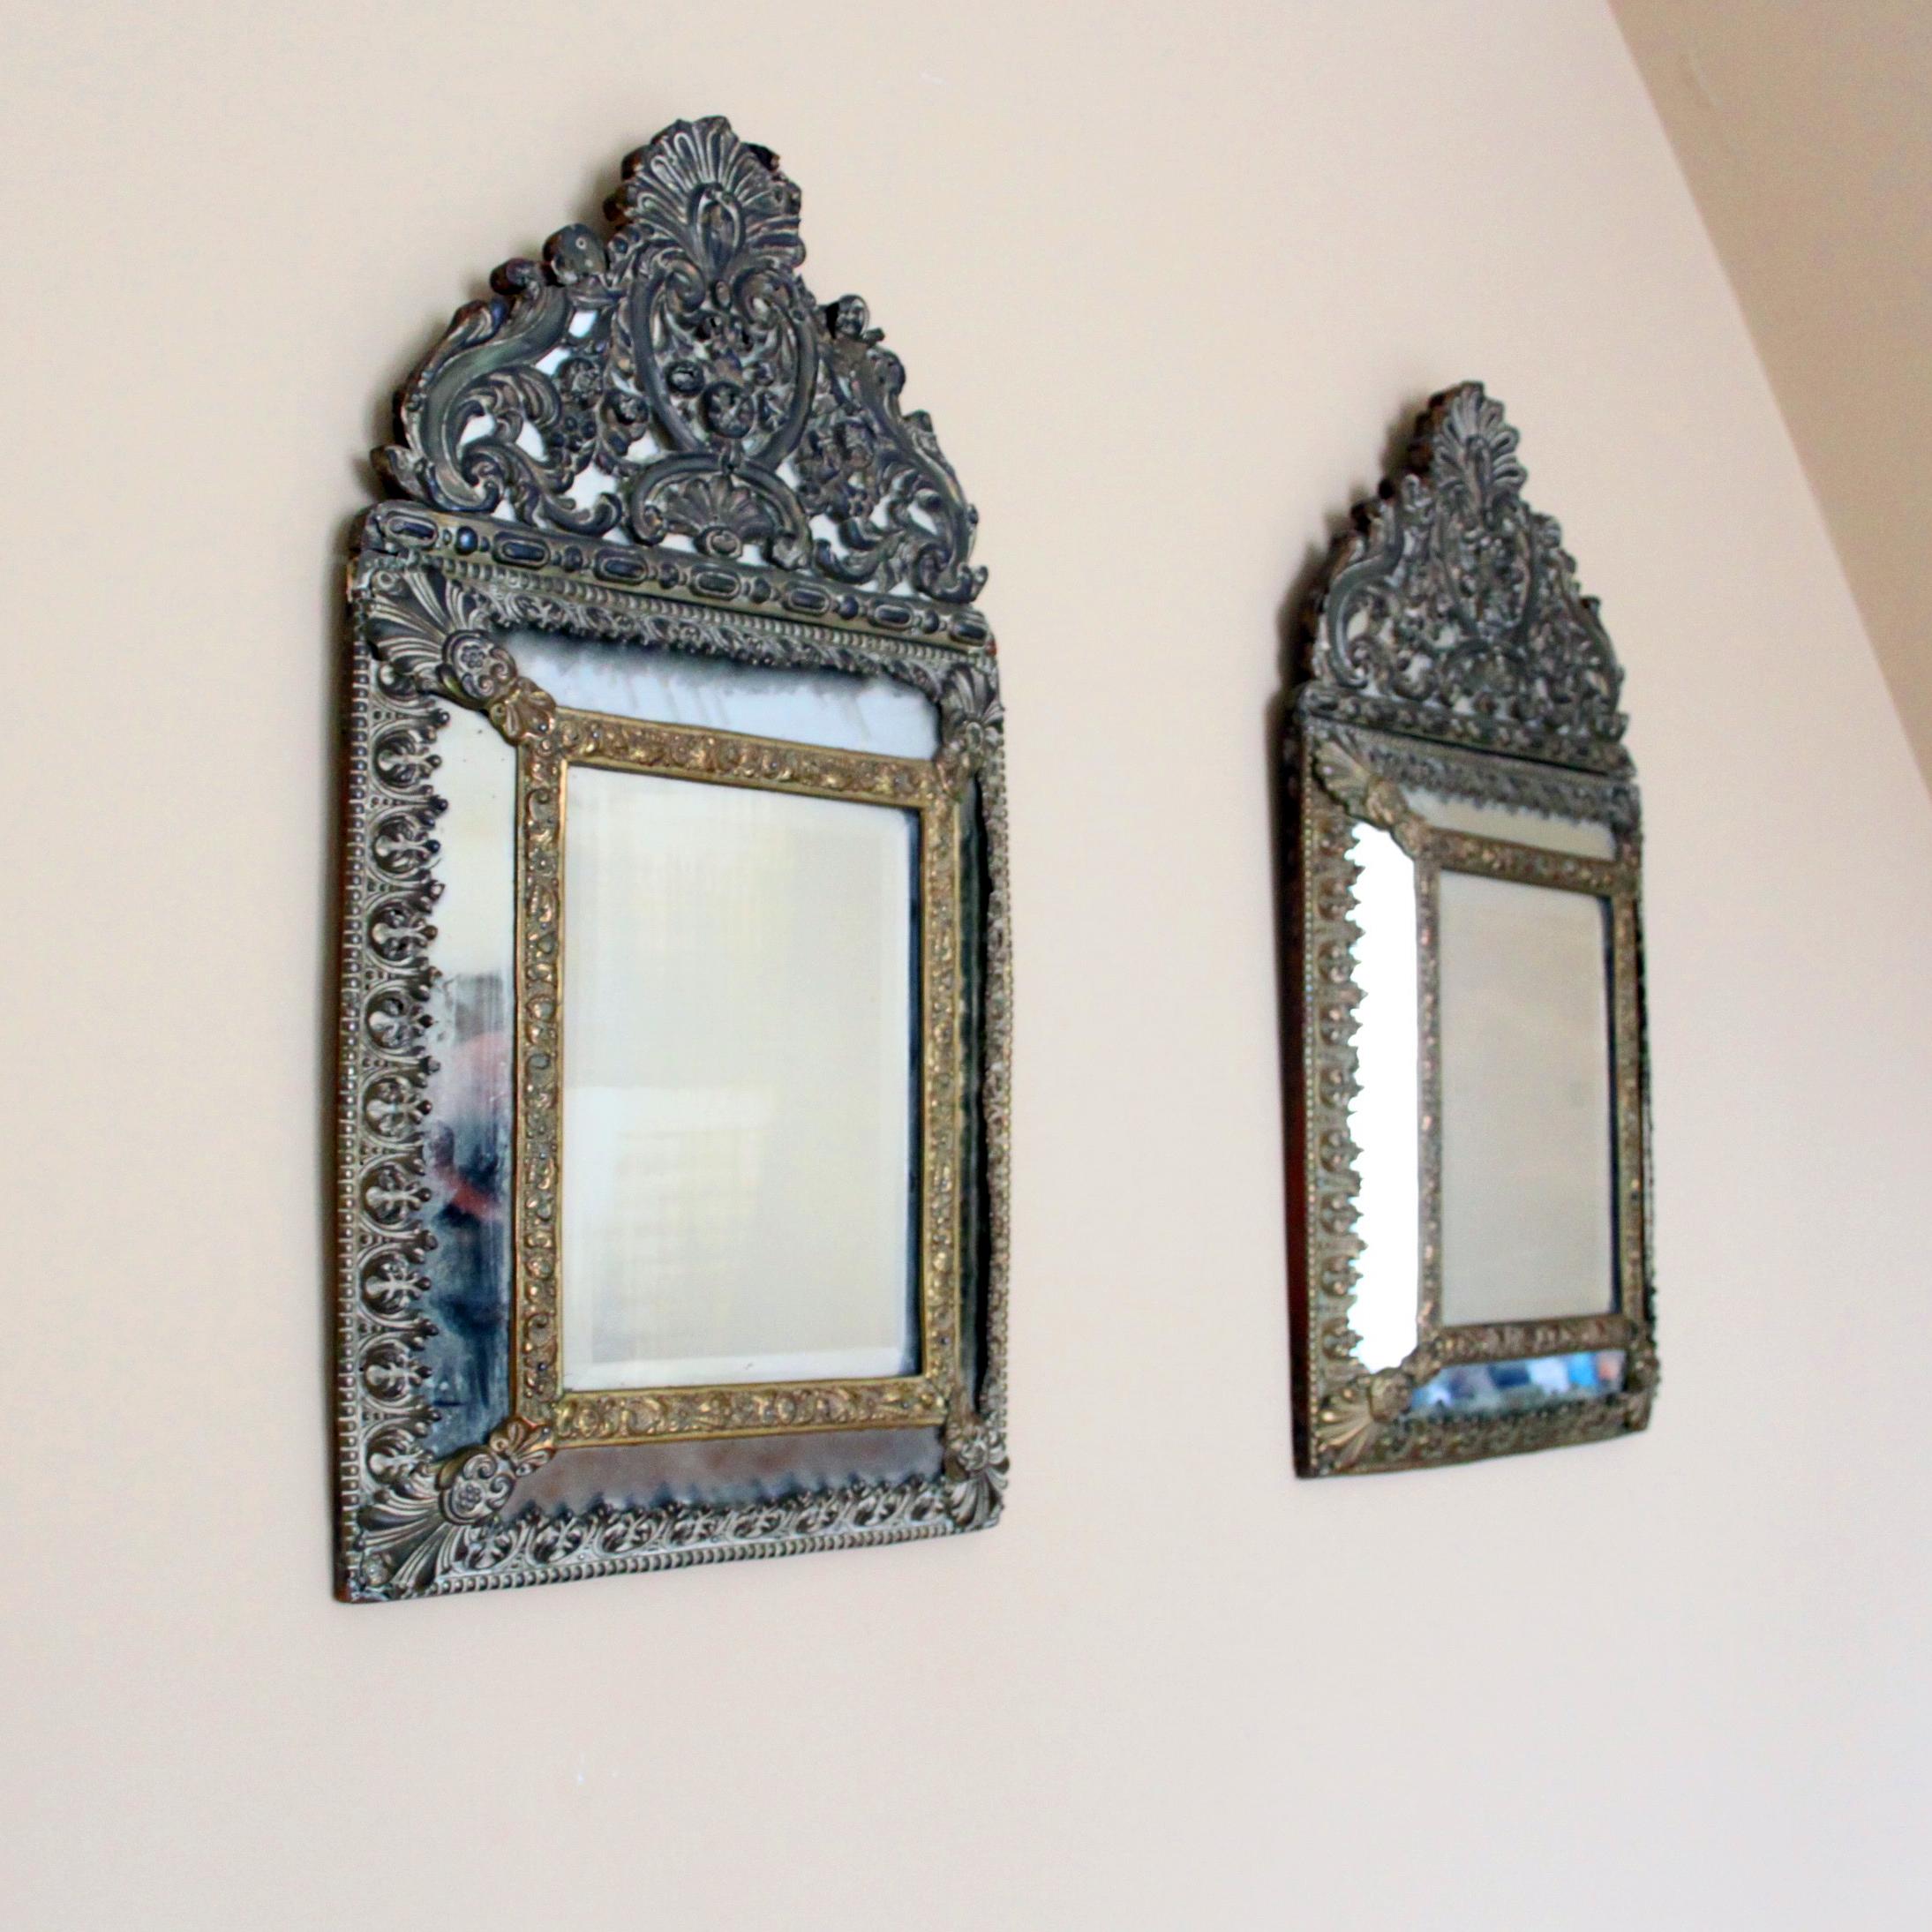 Une belle paire de miroirs anciens dorés avec du verre à facettes. 

Les miroirs proviennent de Hollande, au 19ème siècle, et sont de forme baroque ornementée. 

Ils sont fabriqués en fer-blanc et en bois. 

Une attibution étonnante pour tout